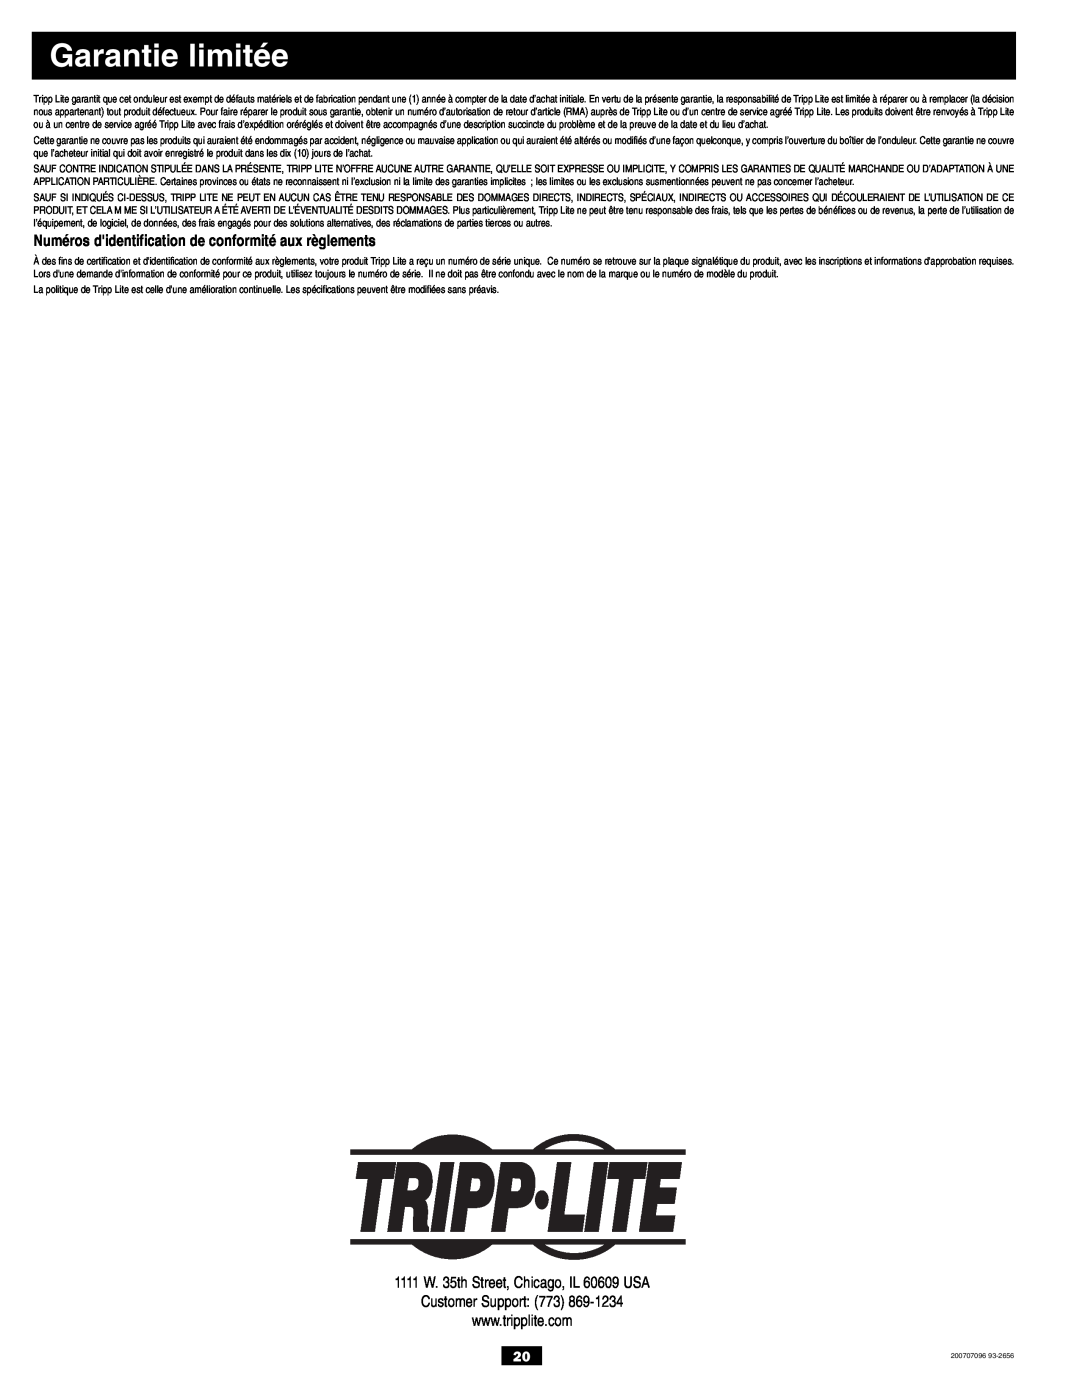 Tripp Lite PV700HF owner manual Garantie limitée, Numéros didentification de conformité aux règlements 